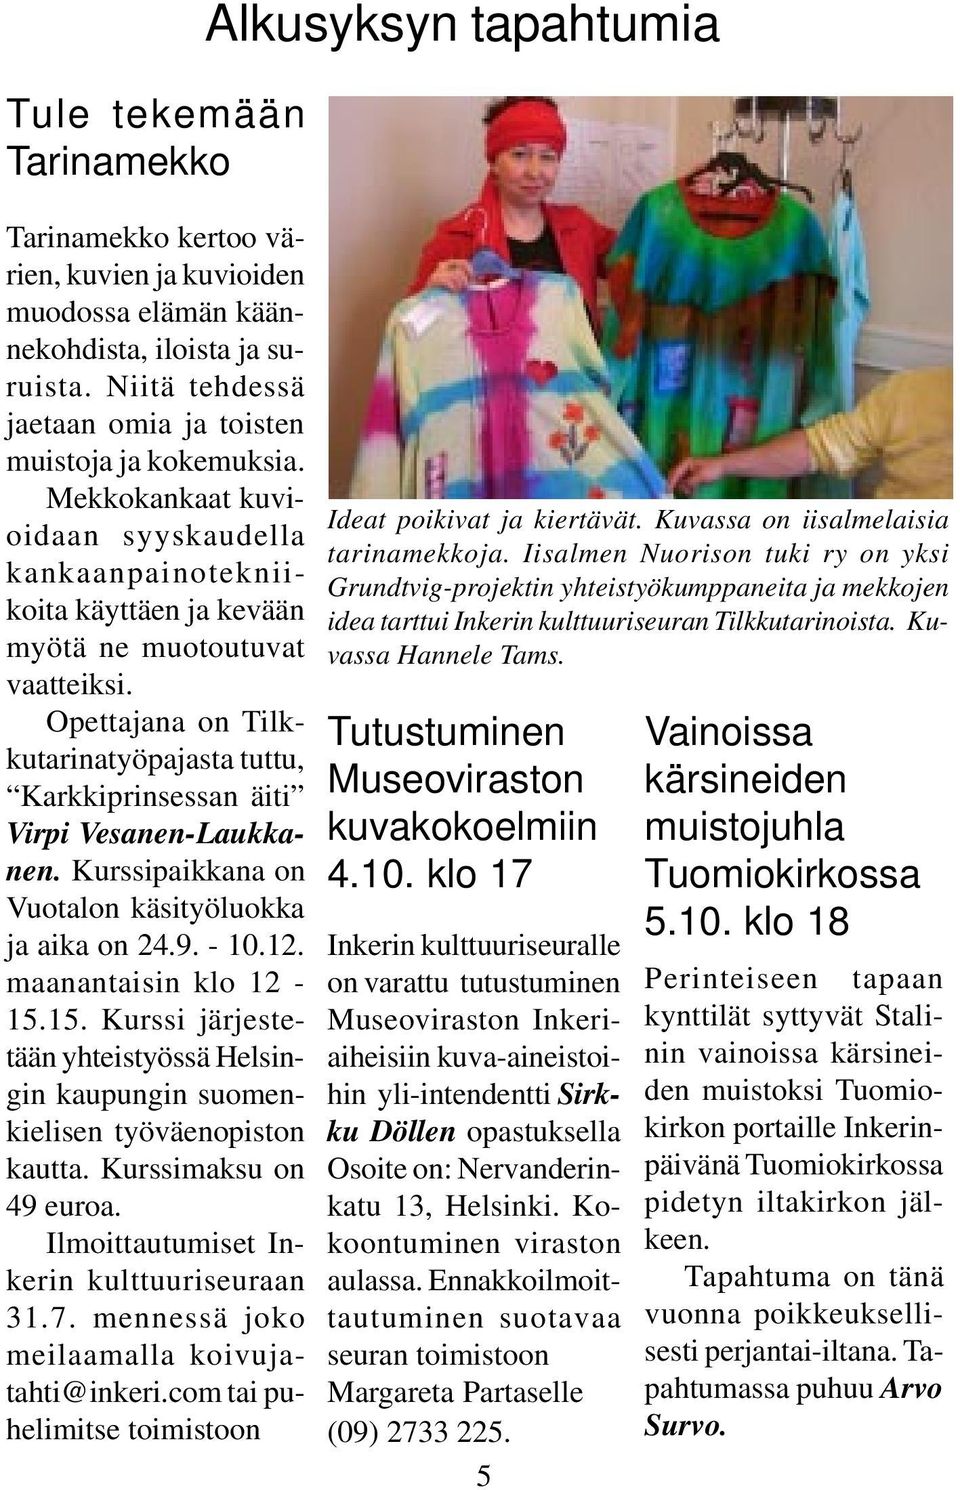 Opettajana on Tilkkutarinatyöpajasta tuttu, Karkkiprinsessan äiti Virpi Vesanen-Laukkanen. Kurssipaikkana on Vuotalon käsityöluokka ja aika on 24.9. - 10.12. maanantaisin klo 12-15.